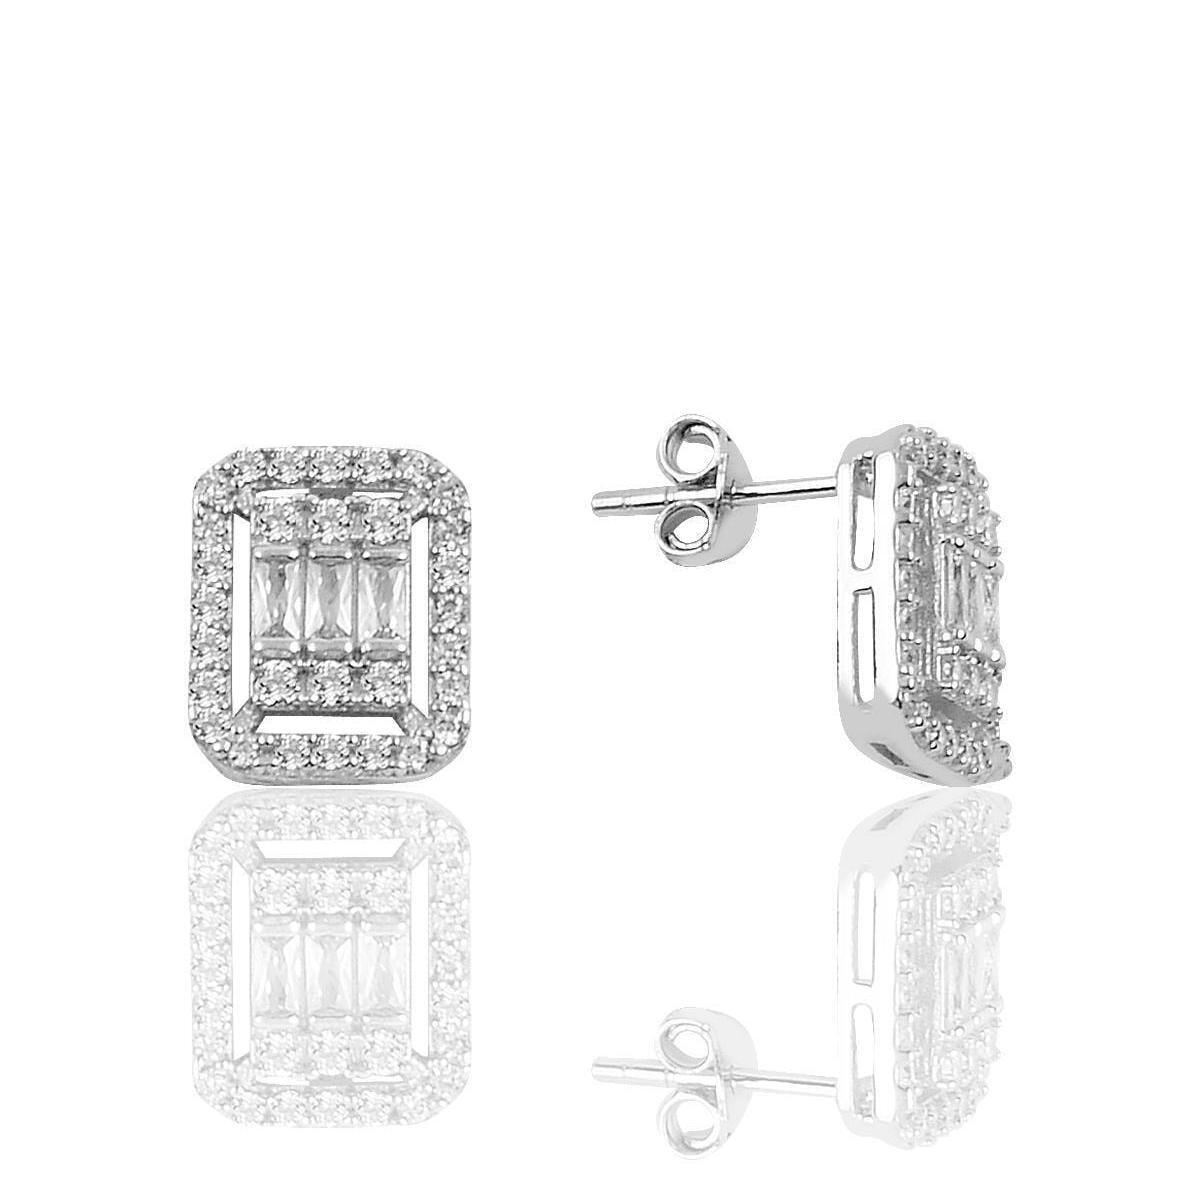 Baguette Cut Diamond Earrings • Baguette Diamonds Earrings - Trending Silver Gifts